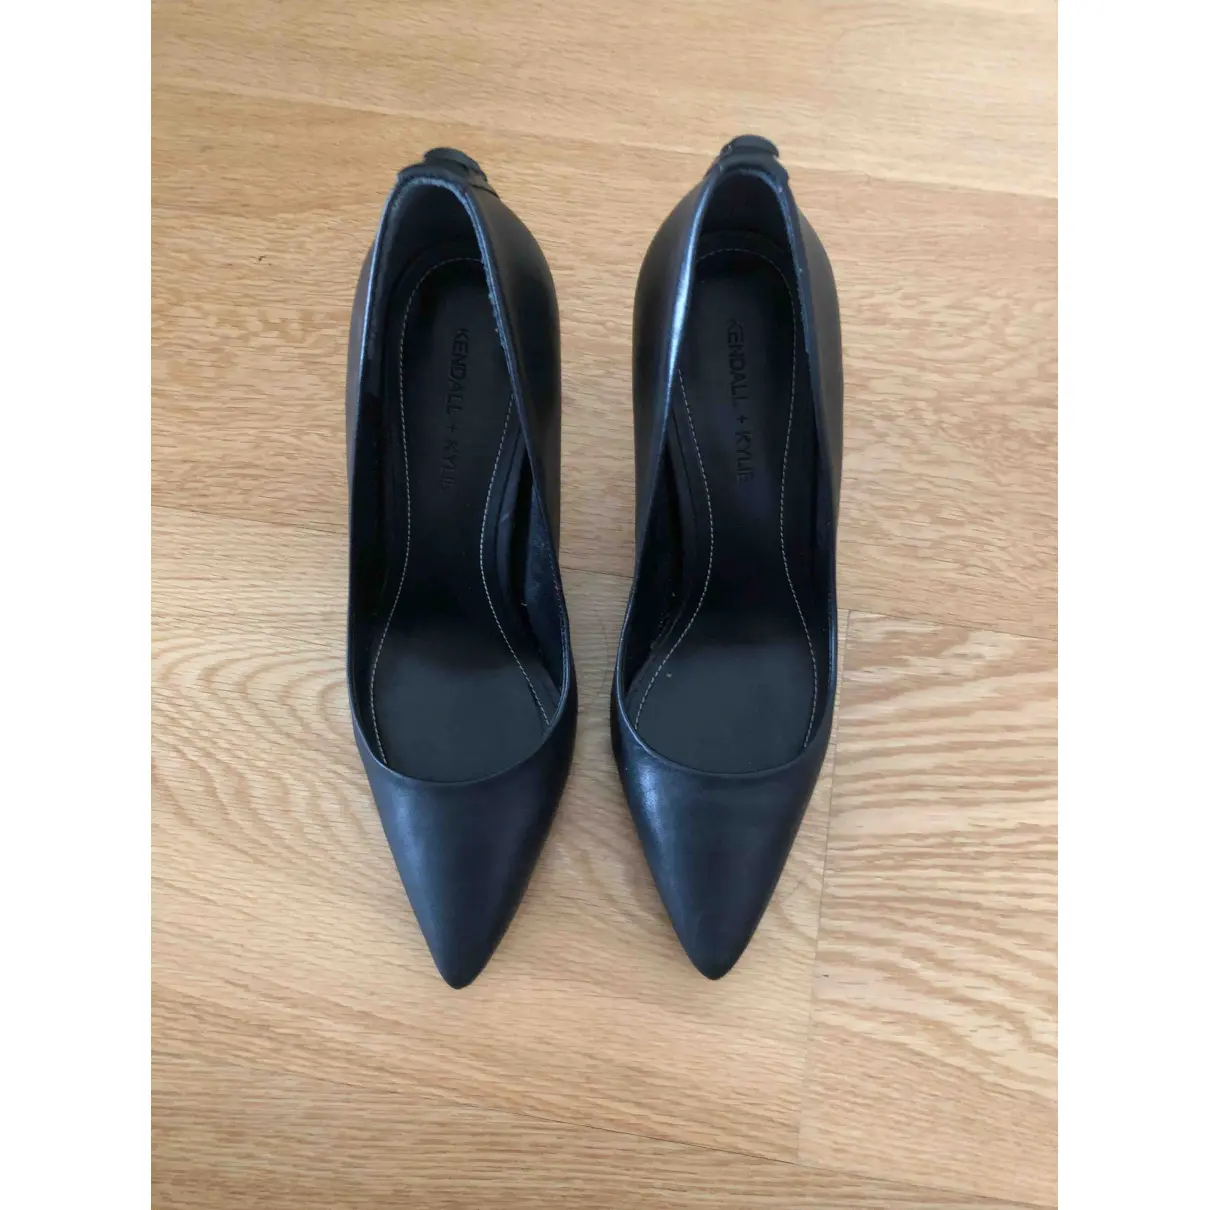 Buy Kendall + Kylie Leather heels online